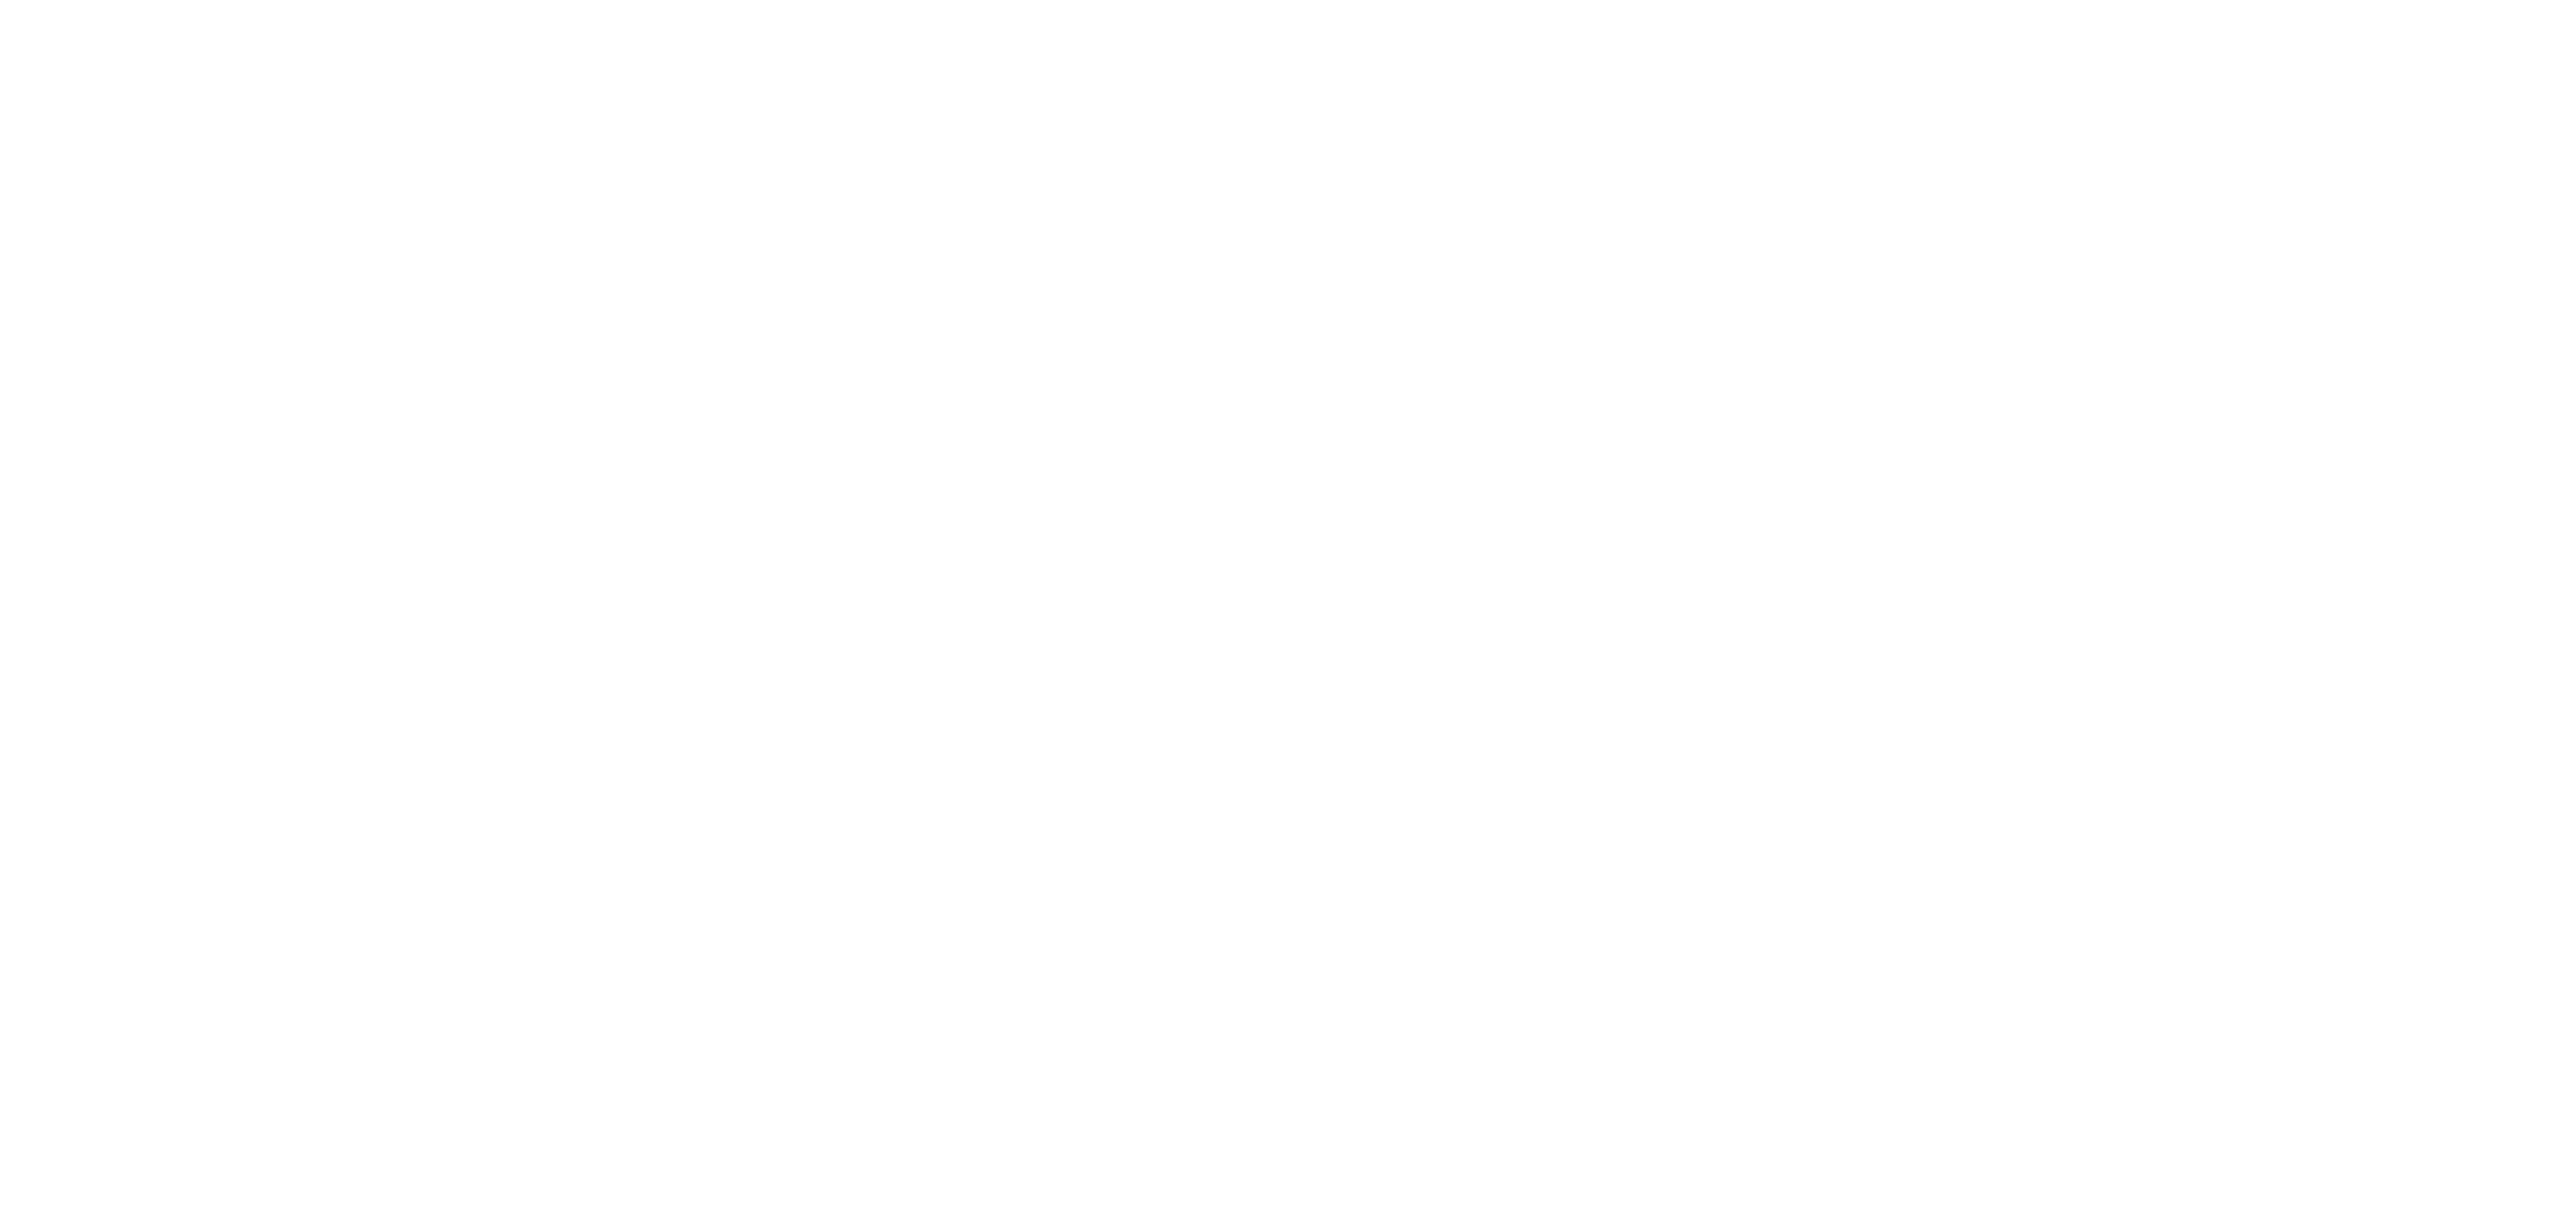 tourism villages project